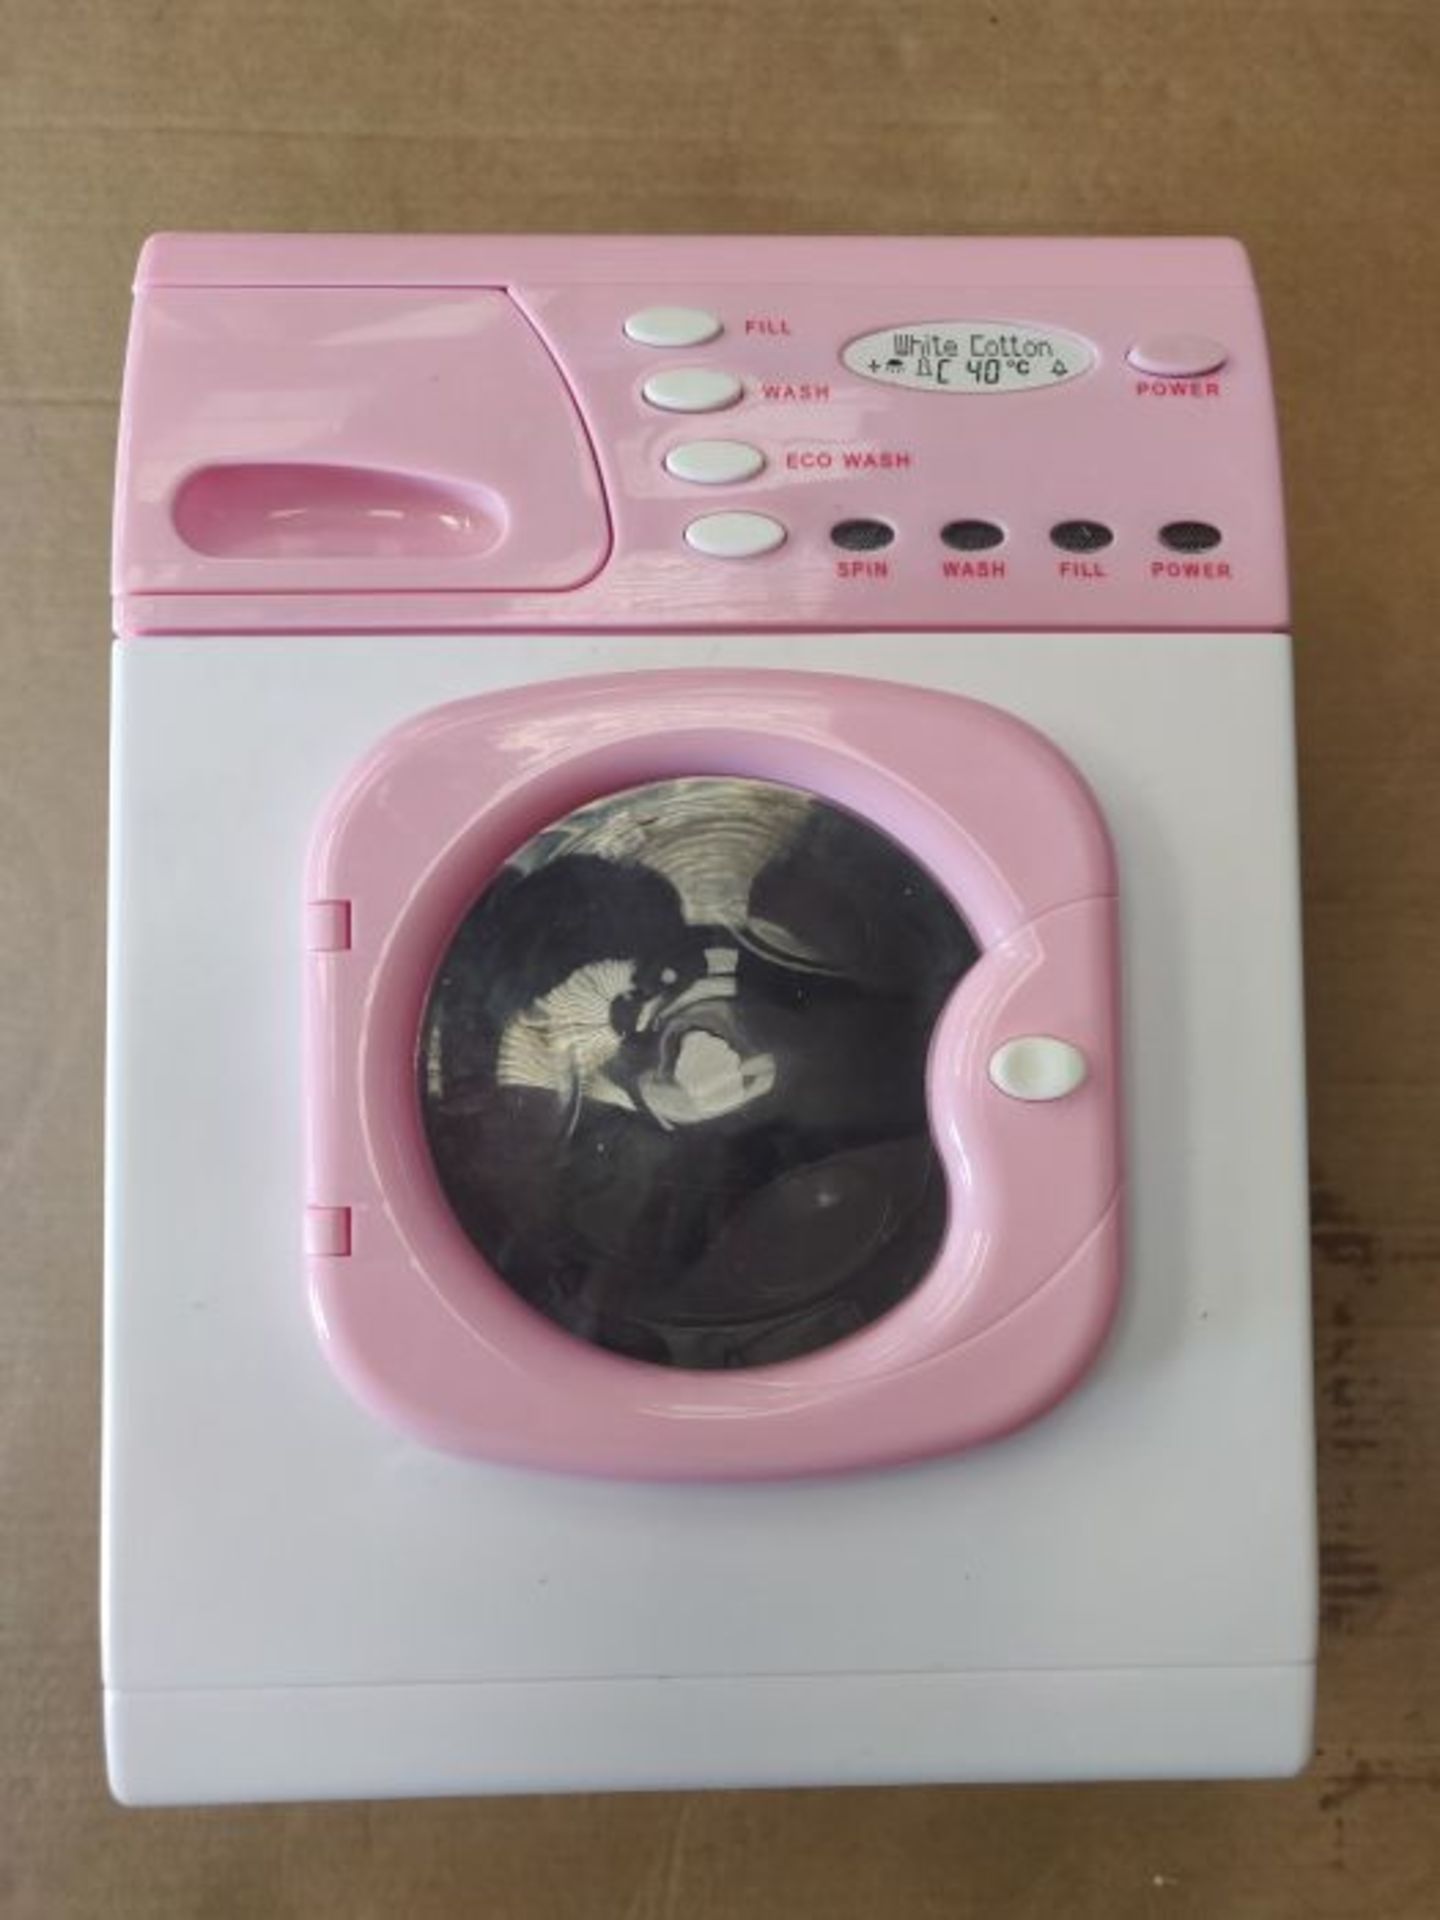 Casdon 621 Electronic Washer (Pink) - Image 2 of 2